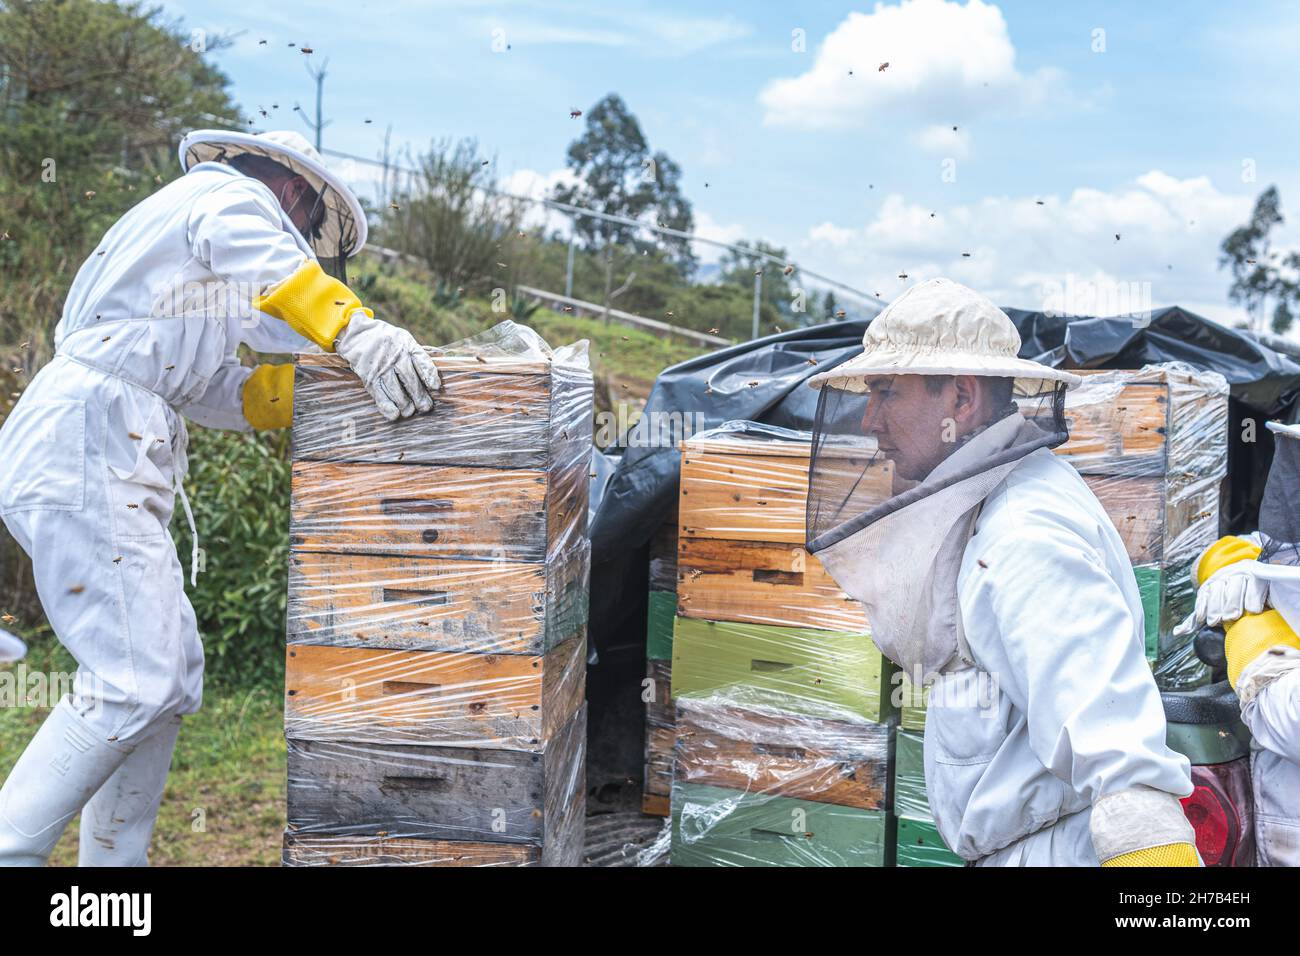 Deux apiculteurs placent des nids d'abeilles dans un camion pour les transporter Banque D'Images